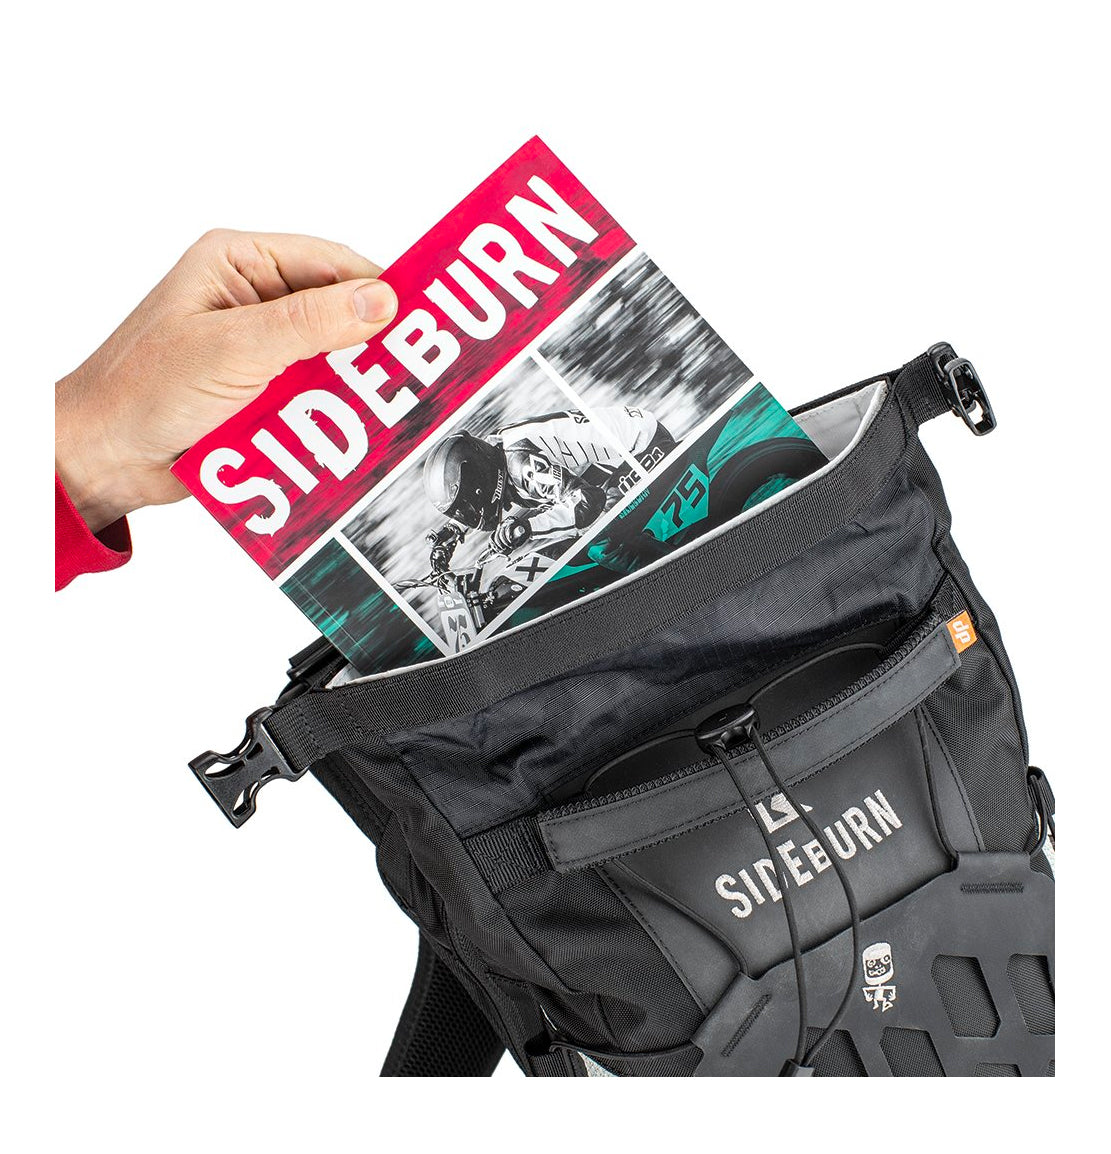 sideburn rucksack